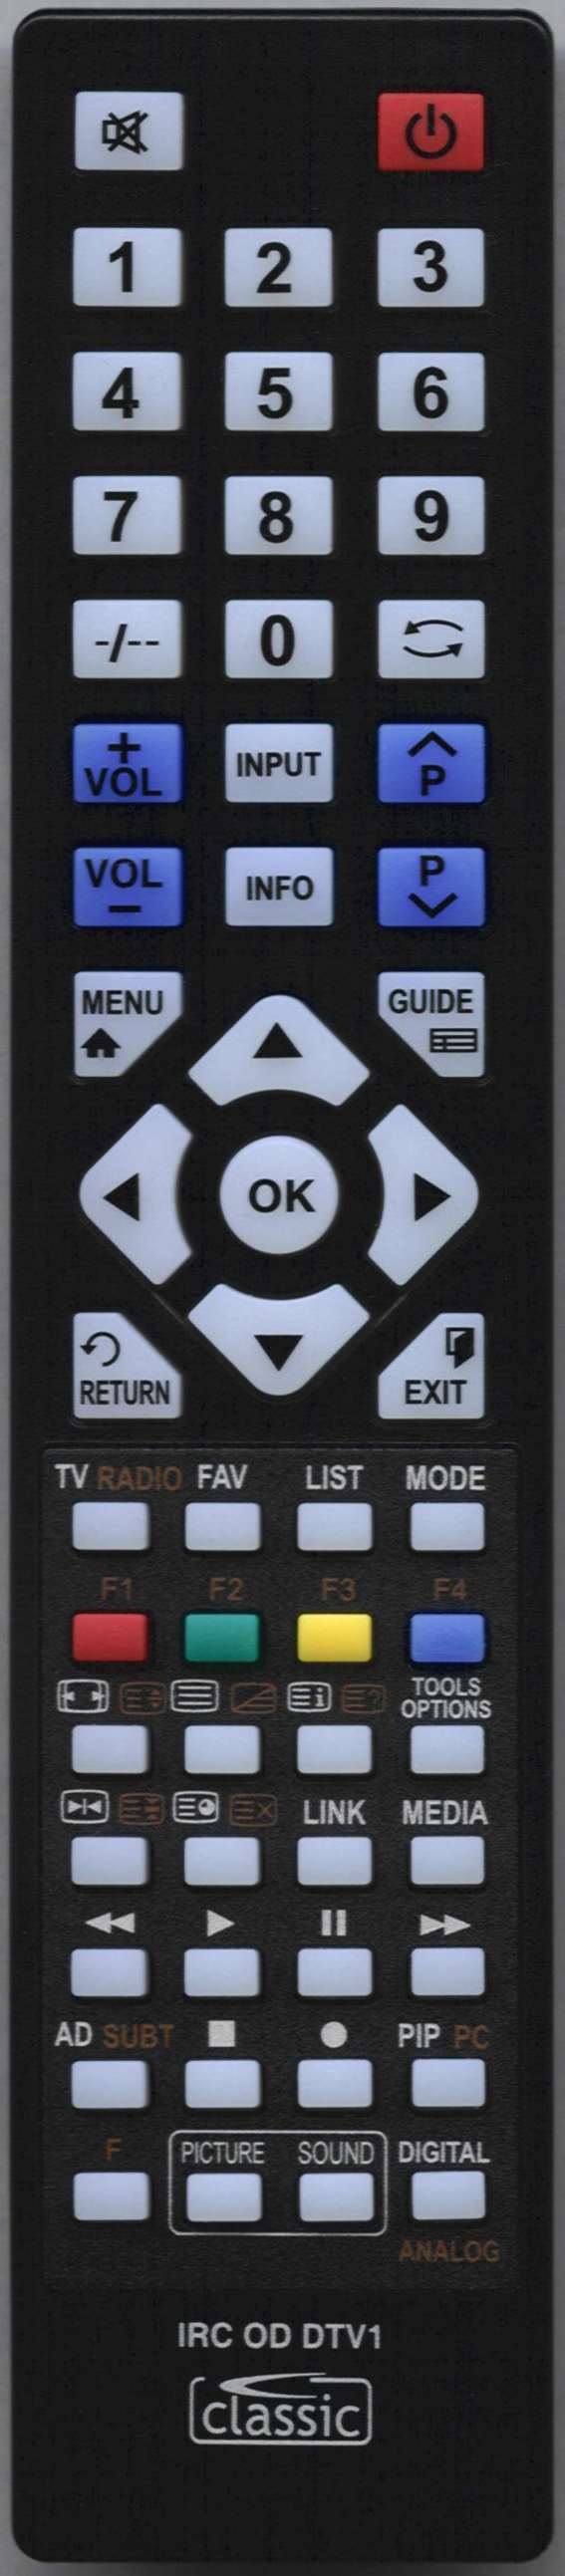 AKURA APL3268 Remote Control